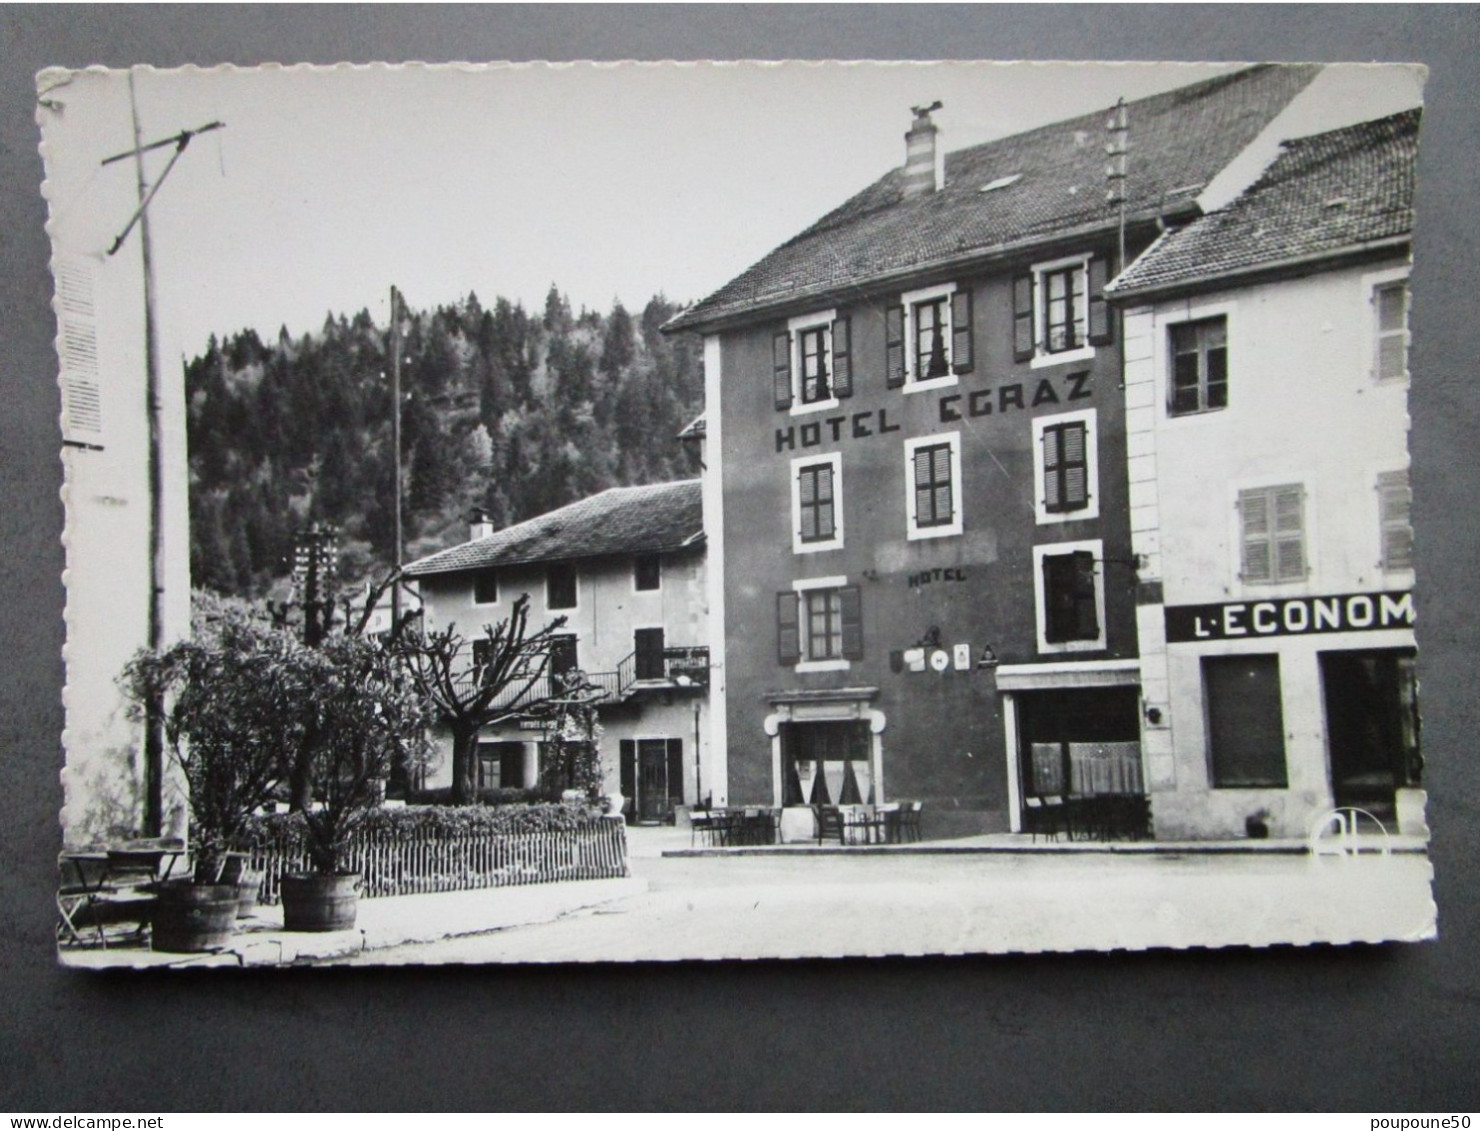 CP 01 Vues De L'Ain SAINT GERMAIN DE JOUX  - Hôtel EGRAZ L'épicerie L'Economique Vers 1950 - Bellegarde-sur-Valserine